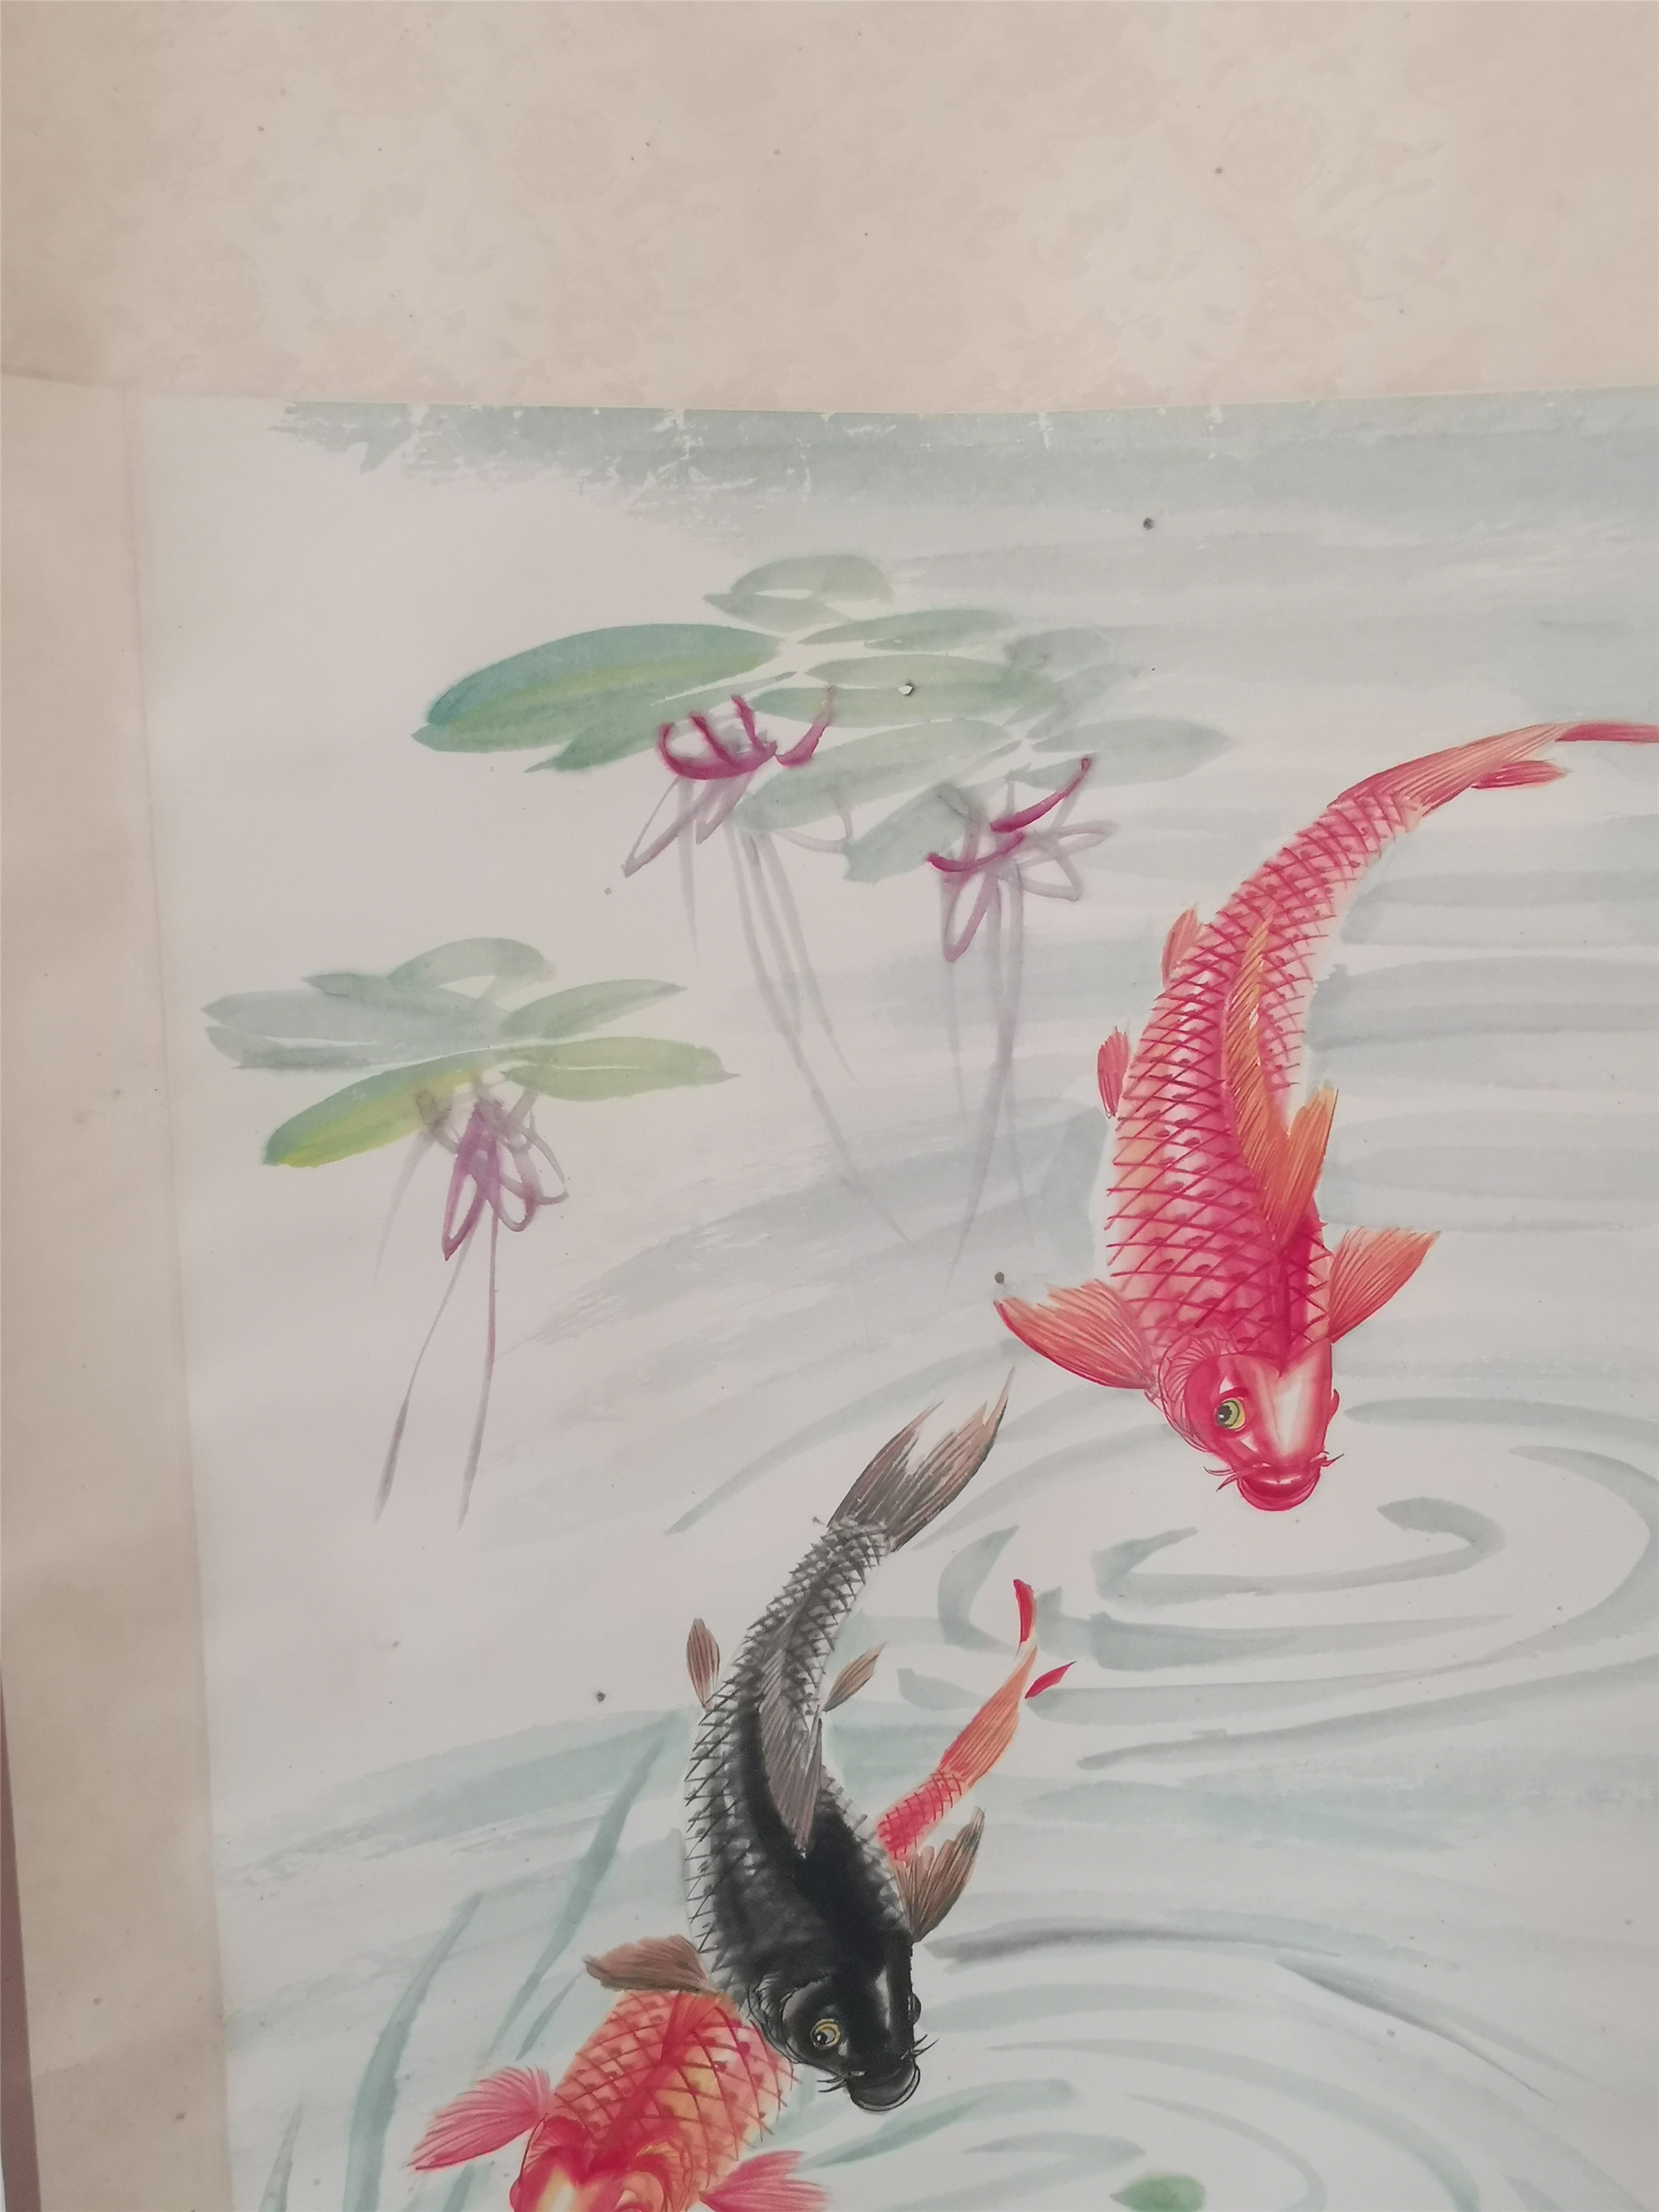 景德镇画鱼第一人图片